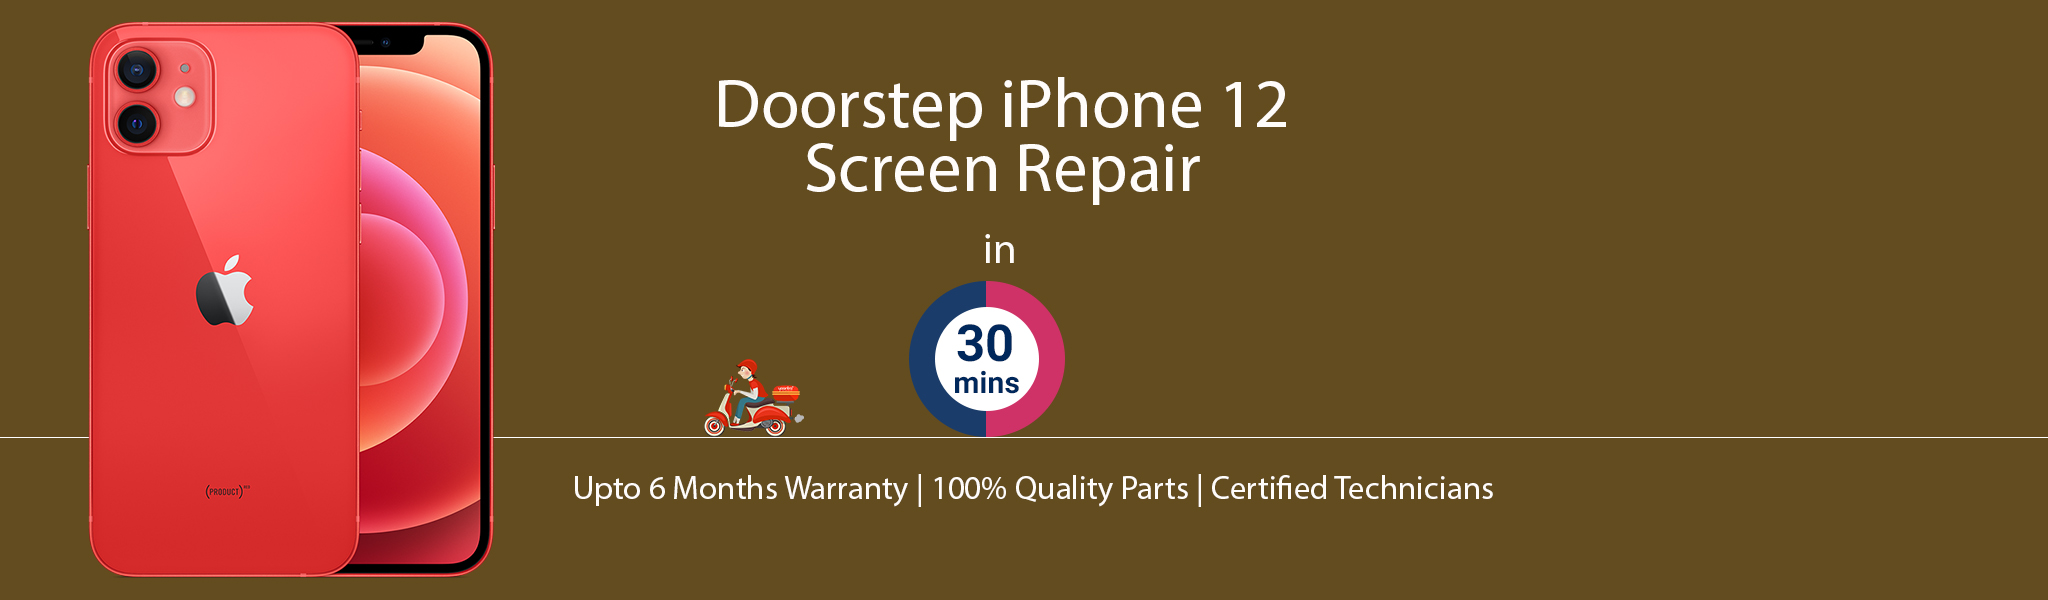 iphone-12-screen-repair.jpg